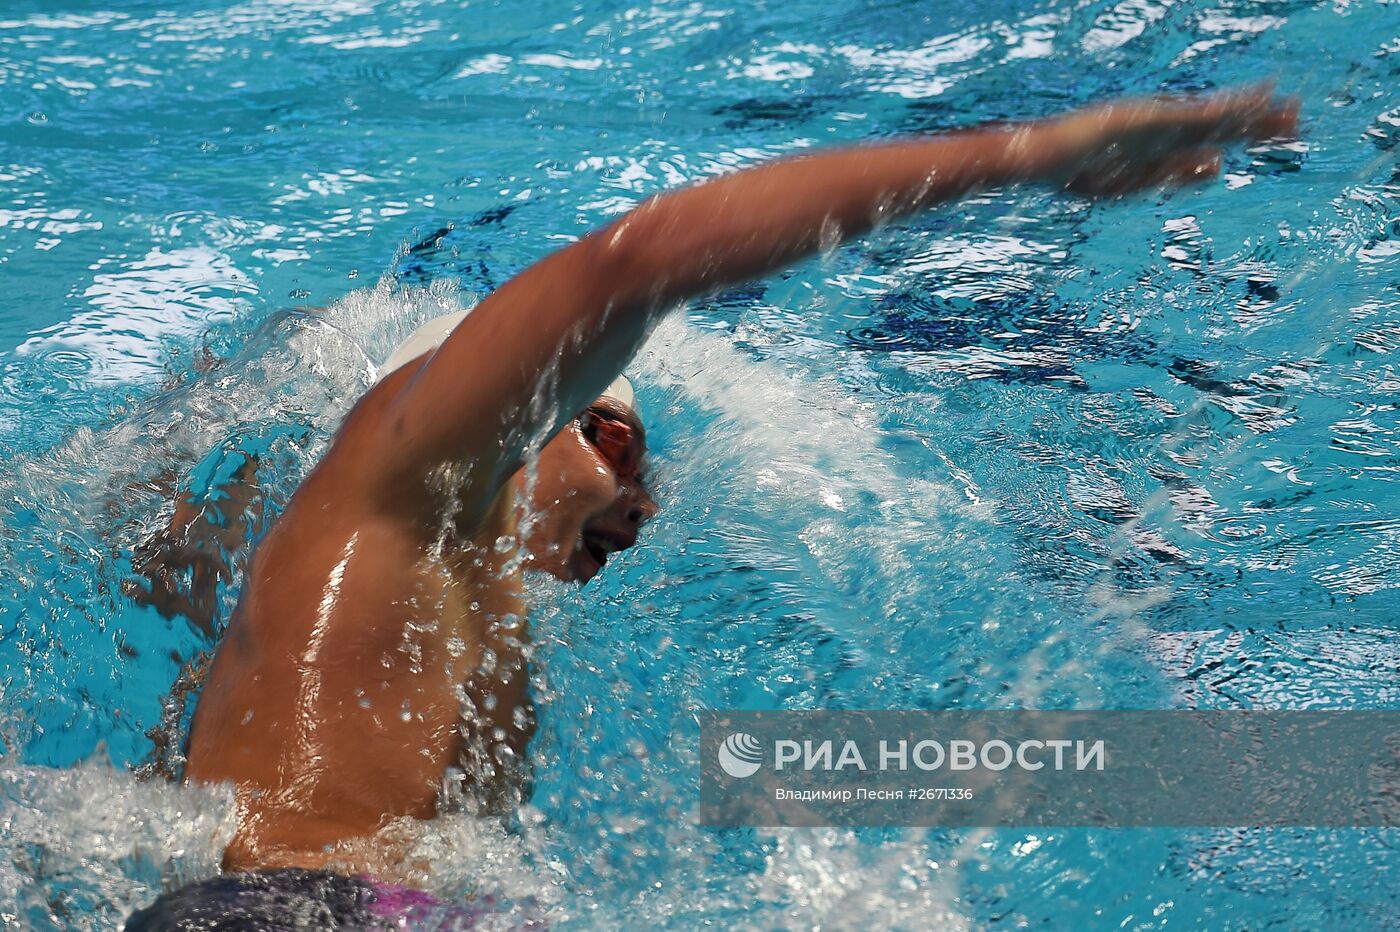 Чемпионат мира FINA 2015. Плавание. Первый день. Утренняя сессия